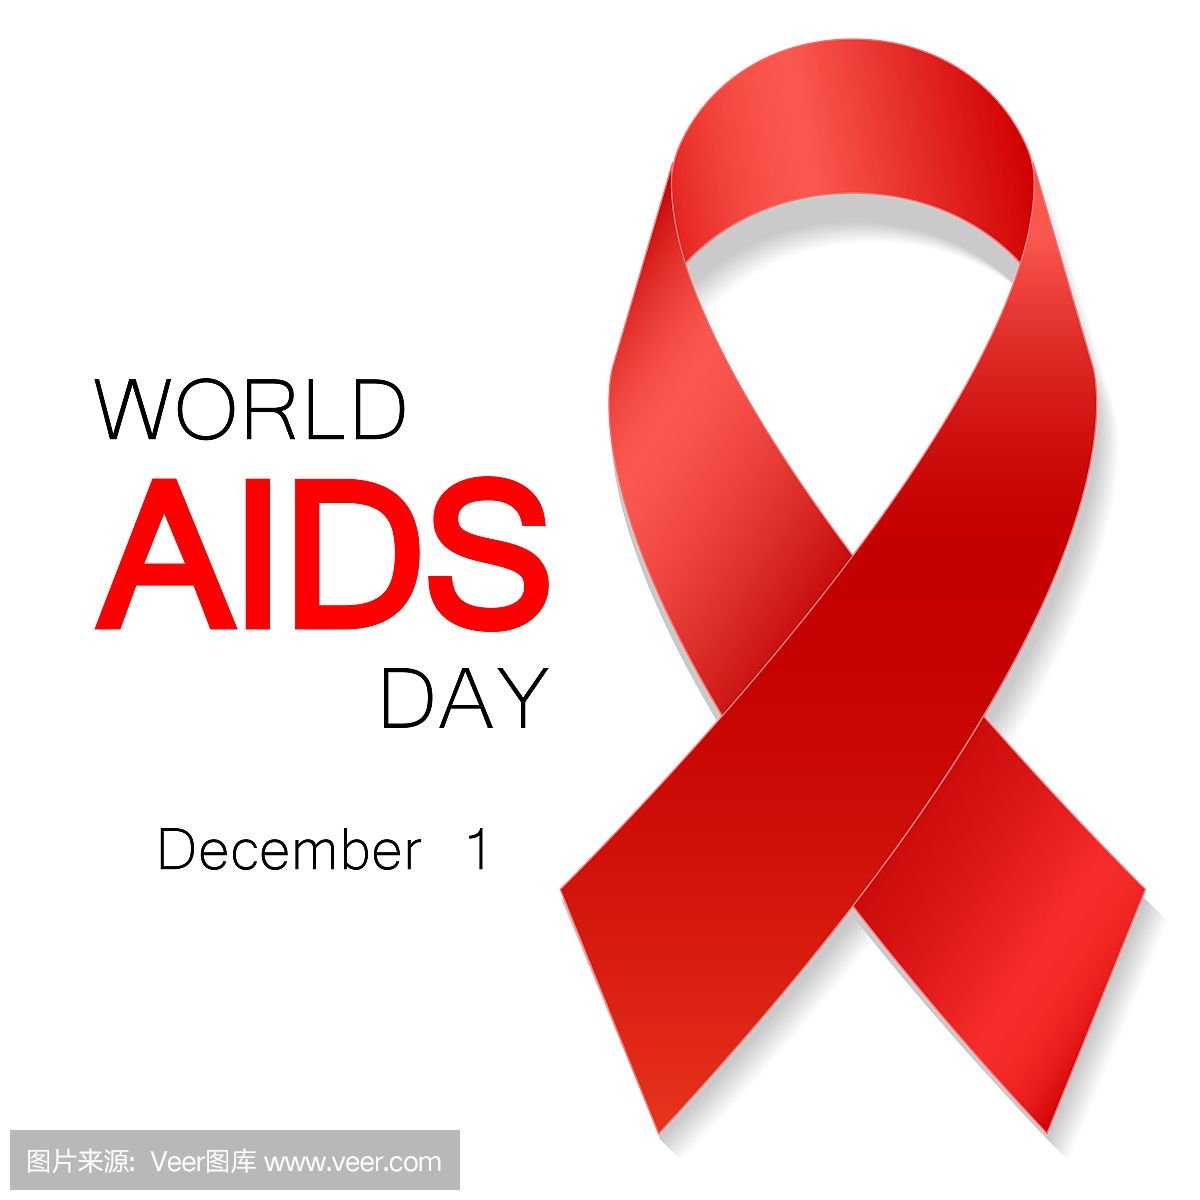 符号,现实的红丝带,12月1日。世界艾滋病日概